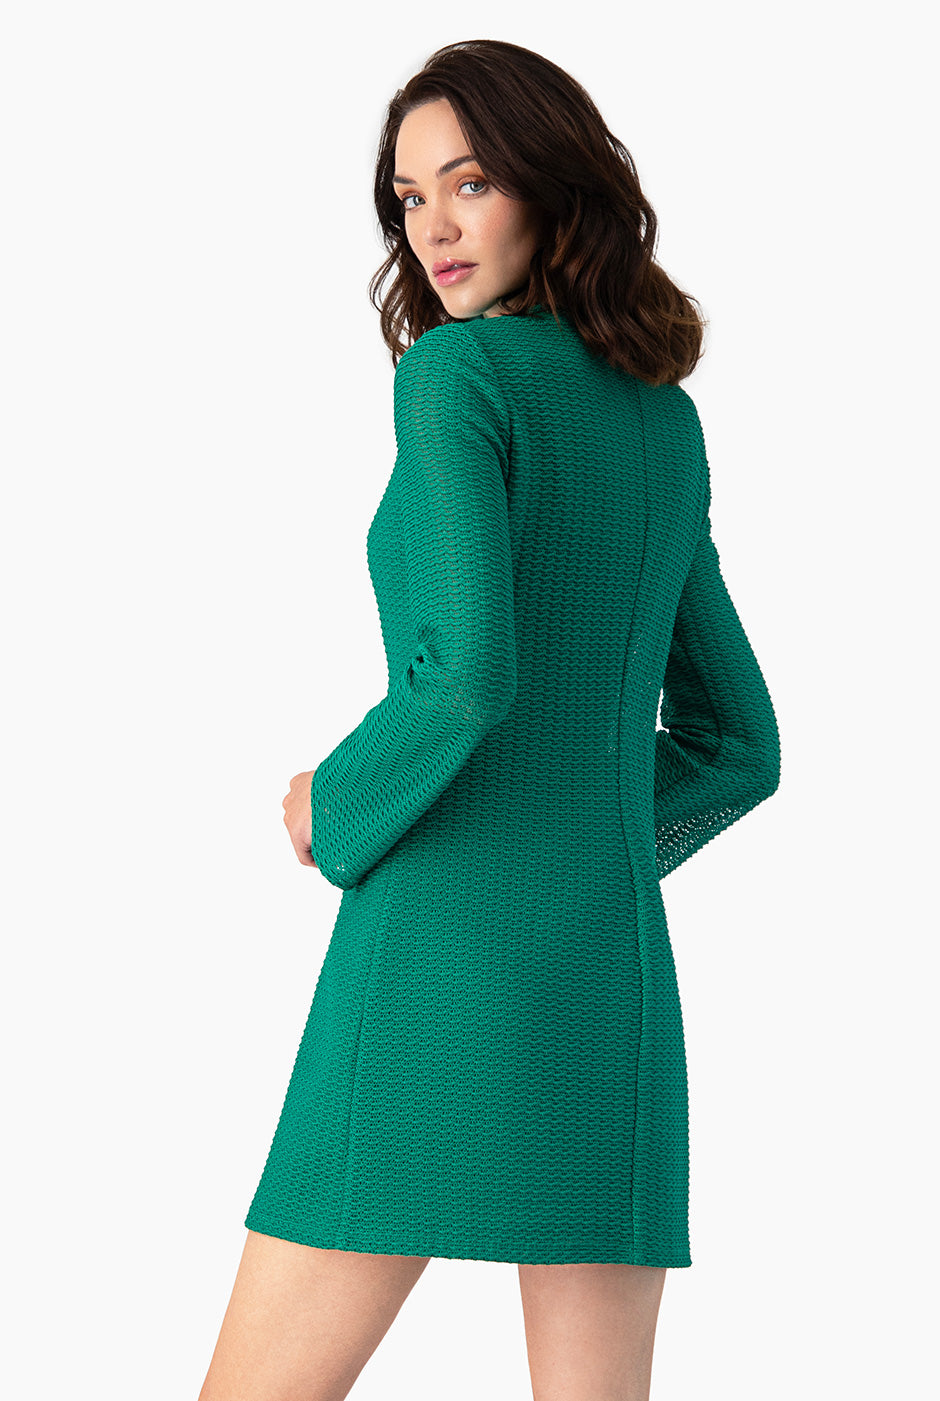 Vestido corto tejido color verde